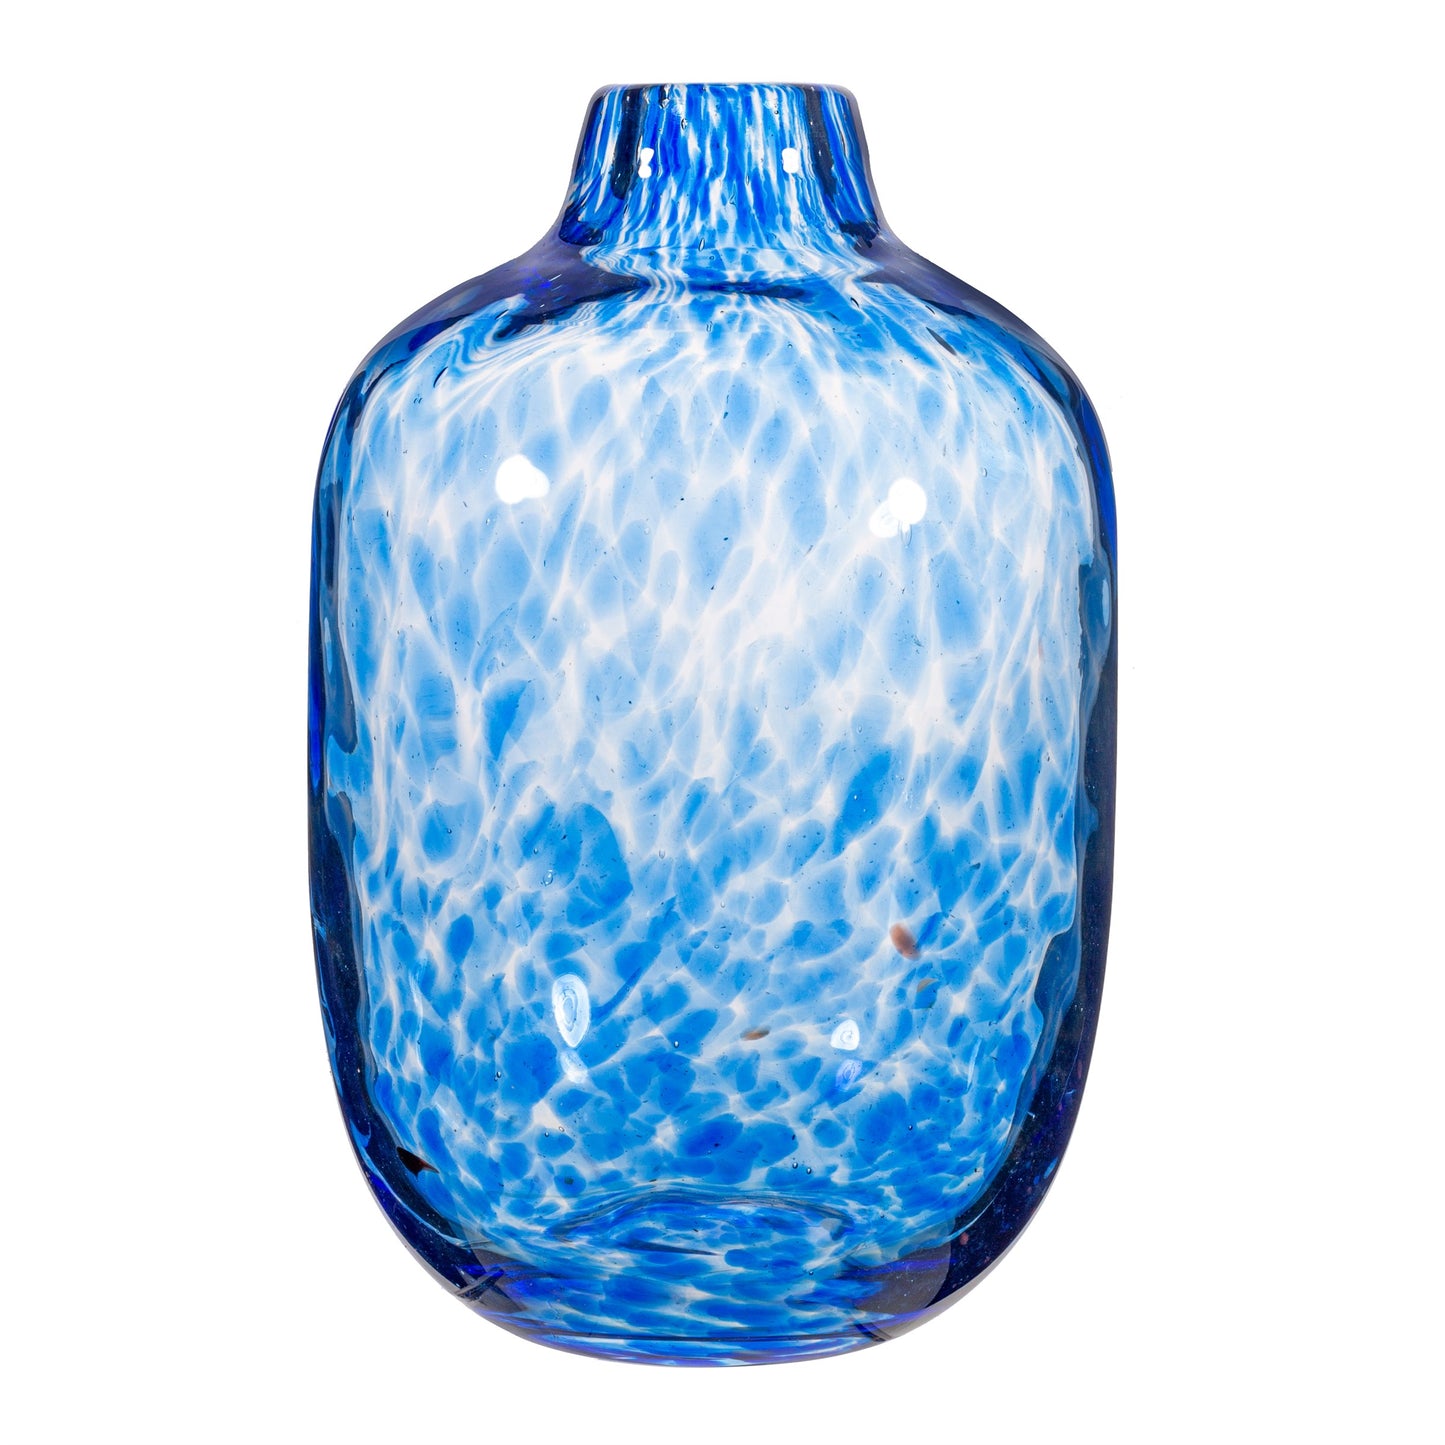 GLEE129 Large Speckled Blue Glass Vase